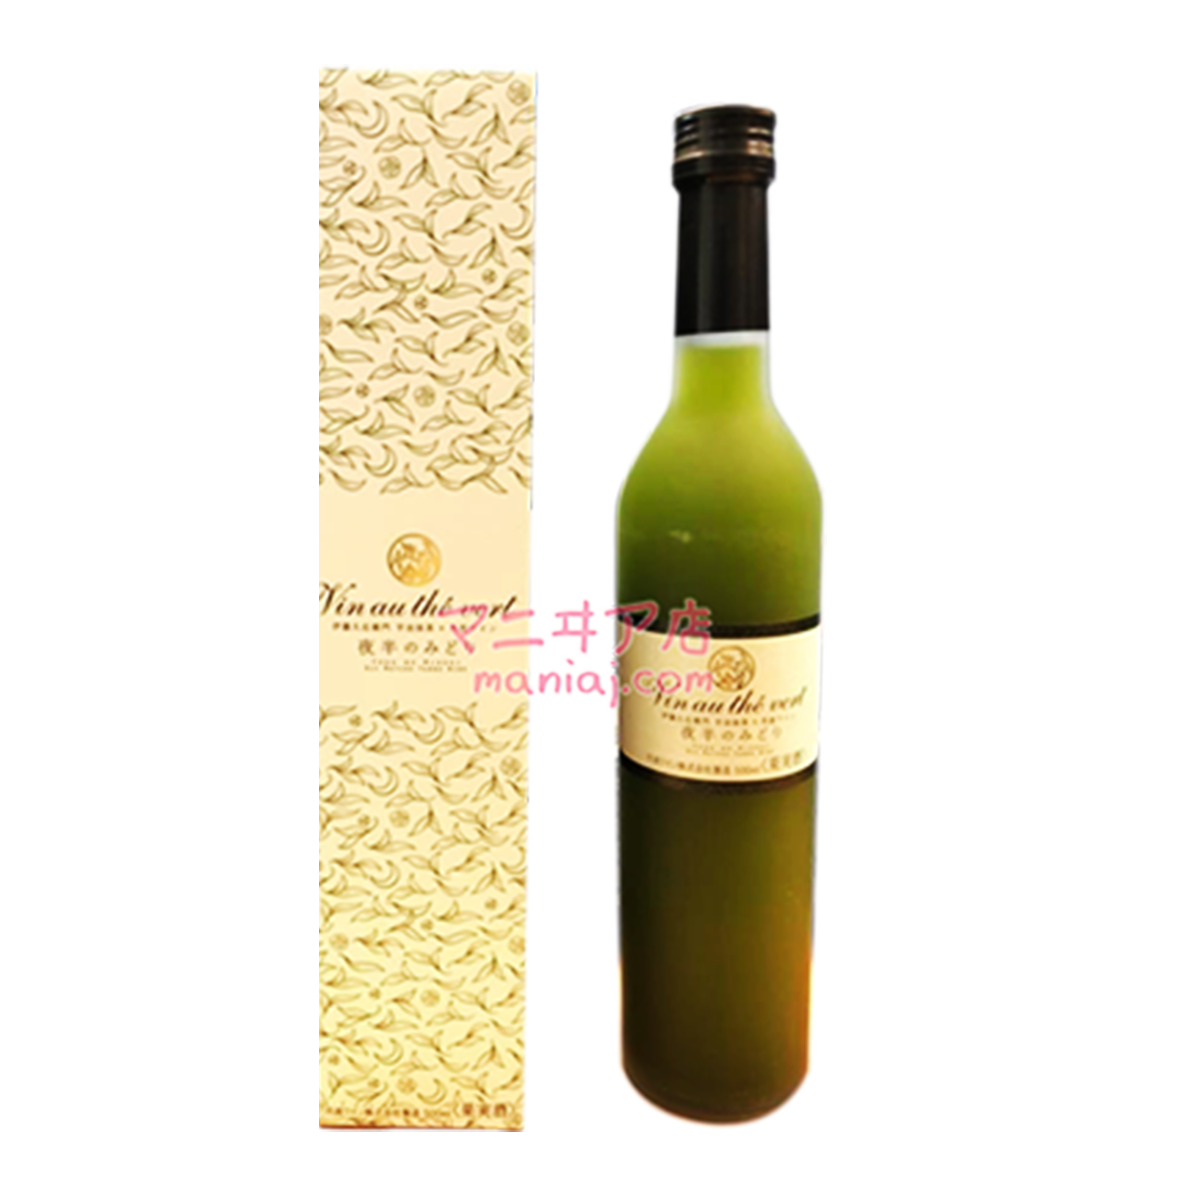 Ito Kyuemon Uji Matcha X Tamba Wine